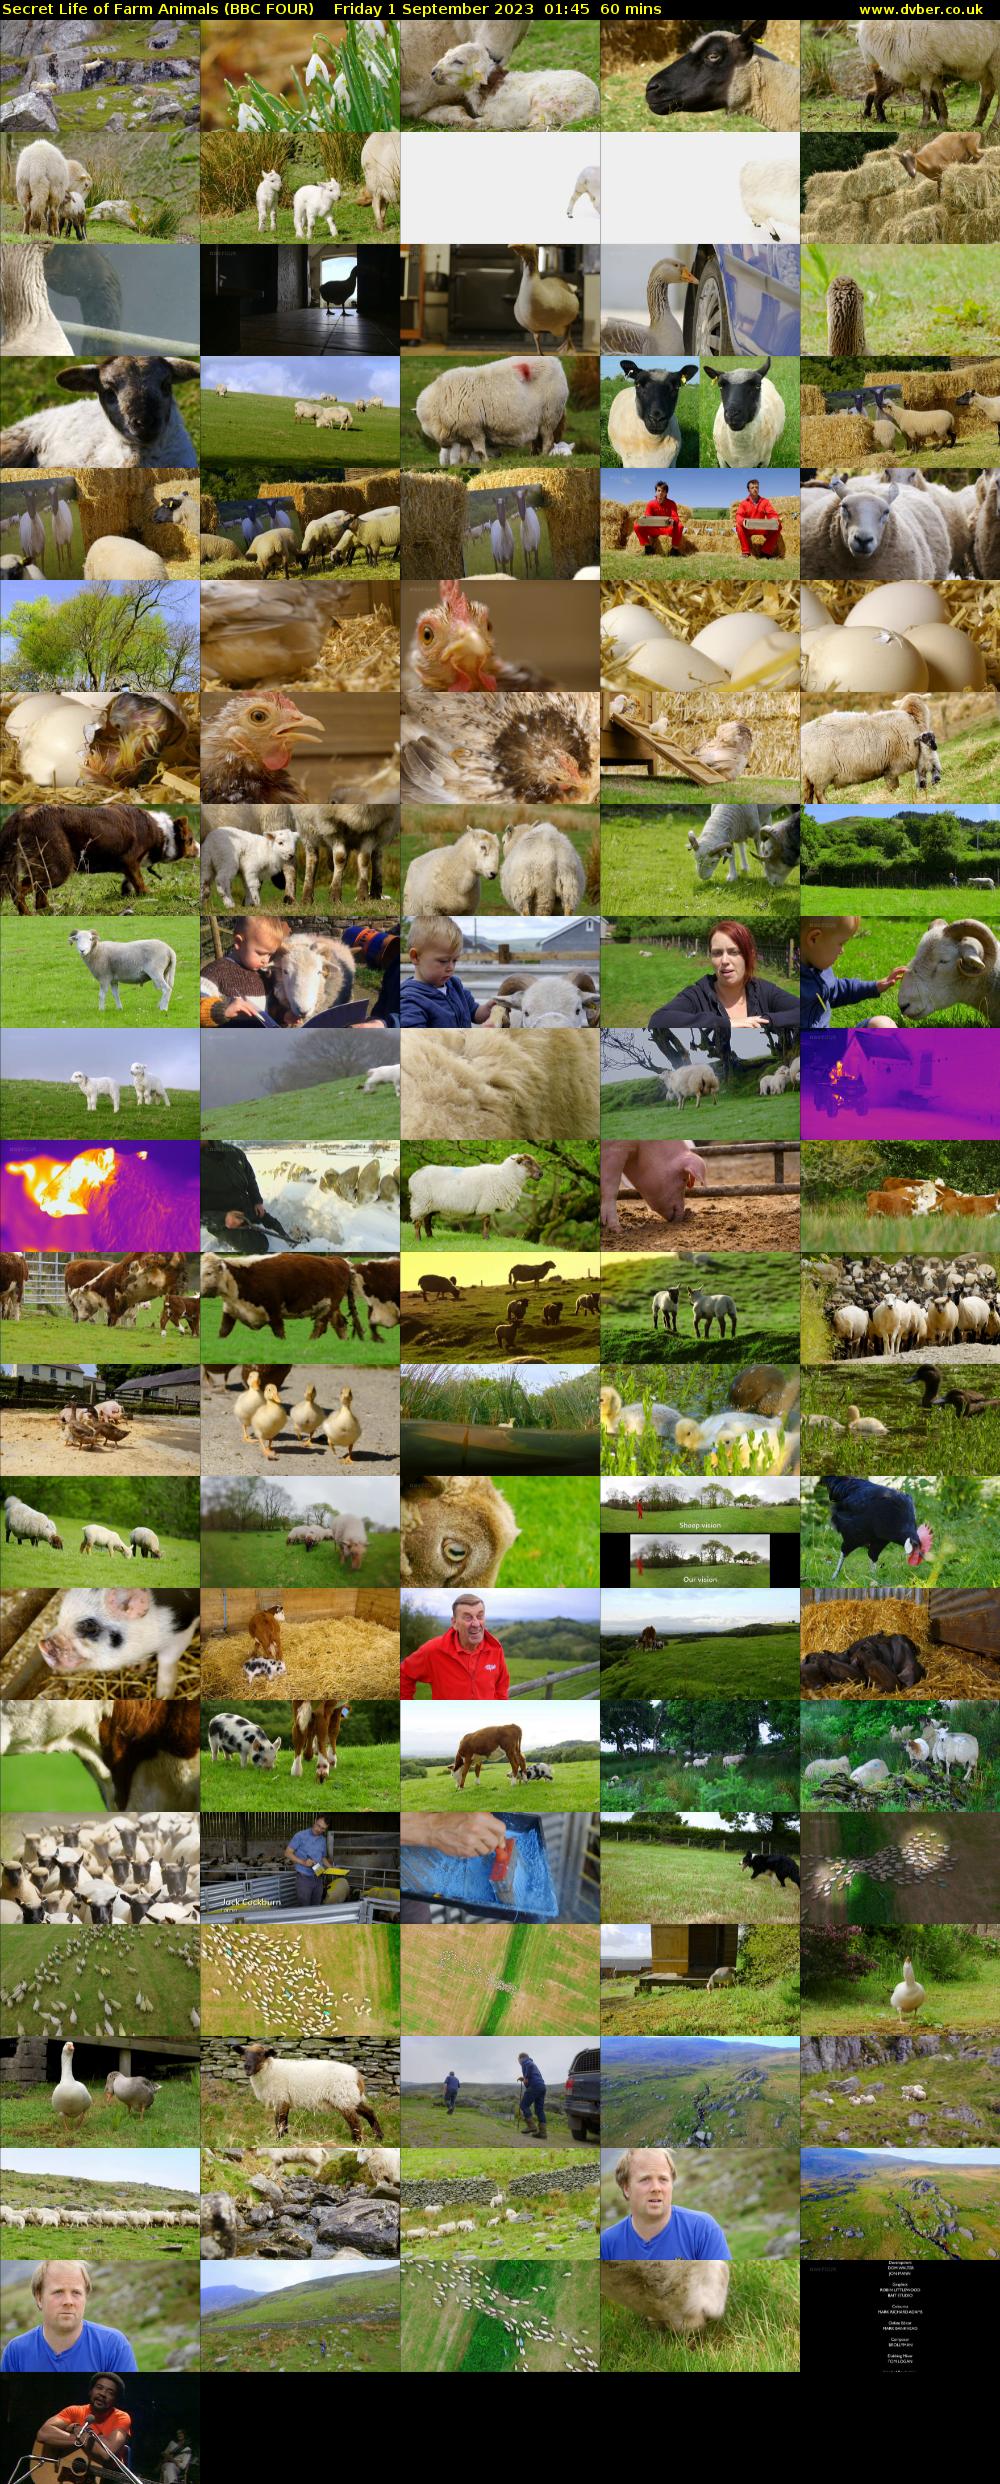 Secret Life of Farm Animals (BBC FOUR) Friday 1 September 2023 01:45 - 02:45